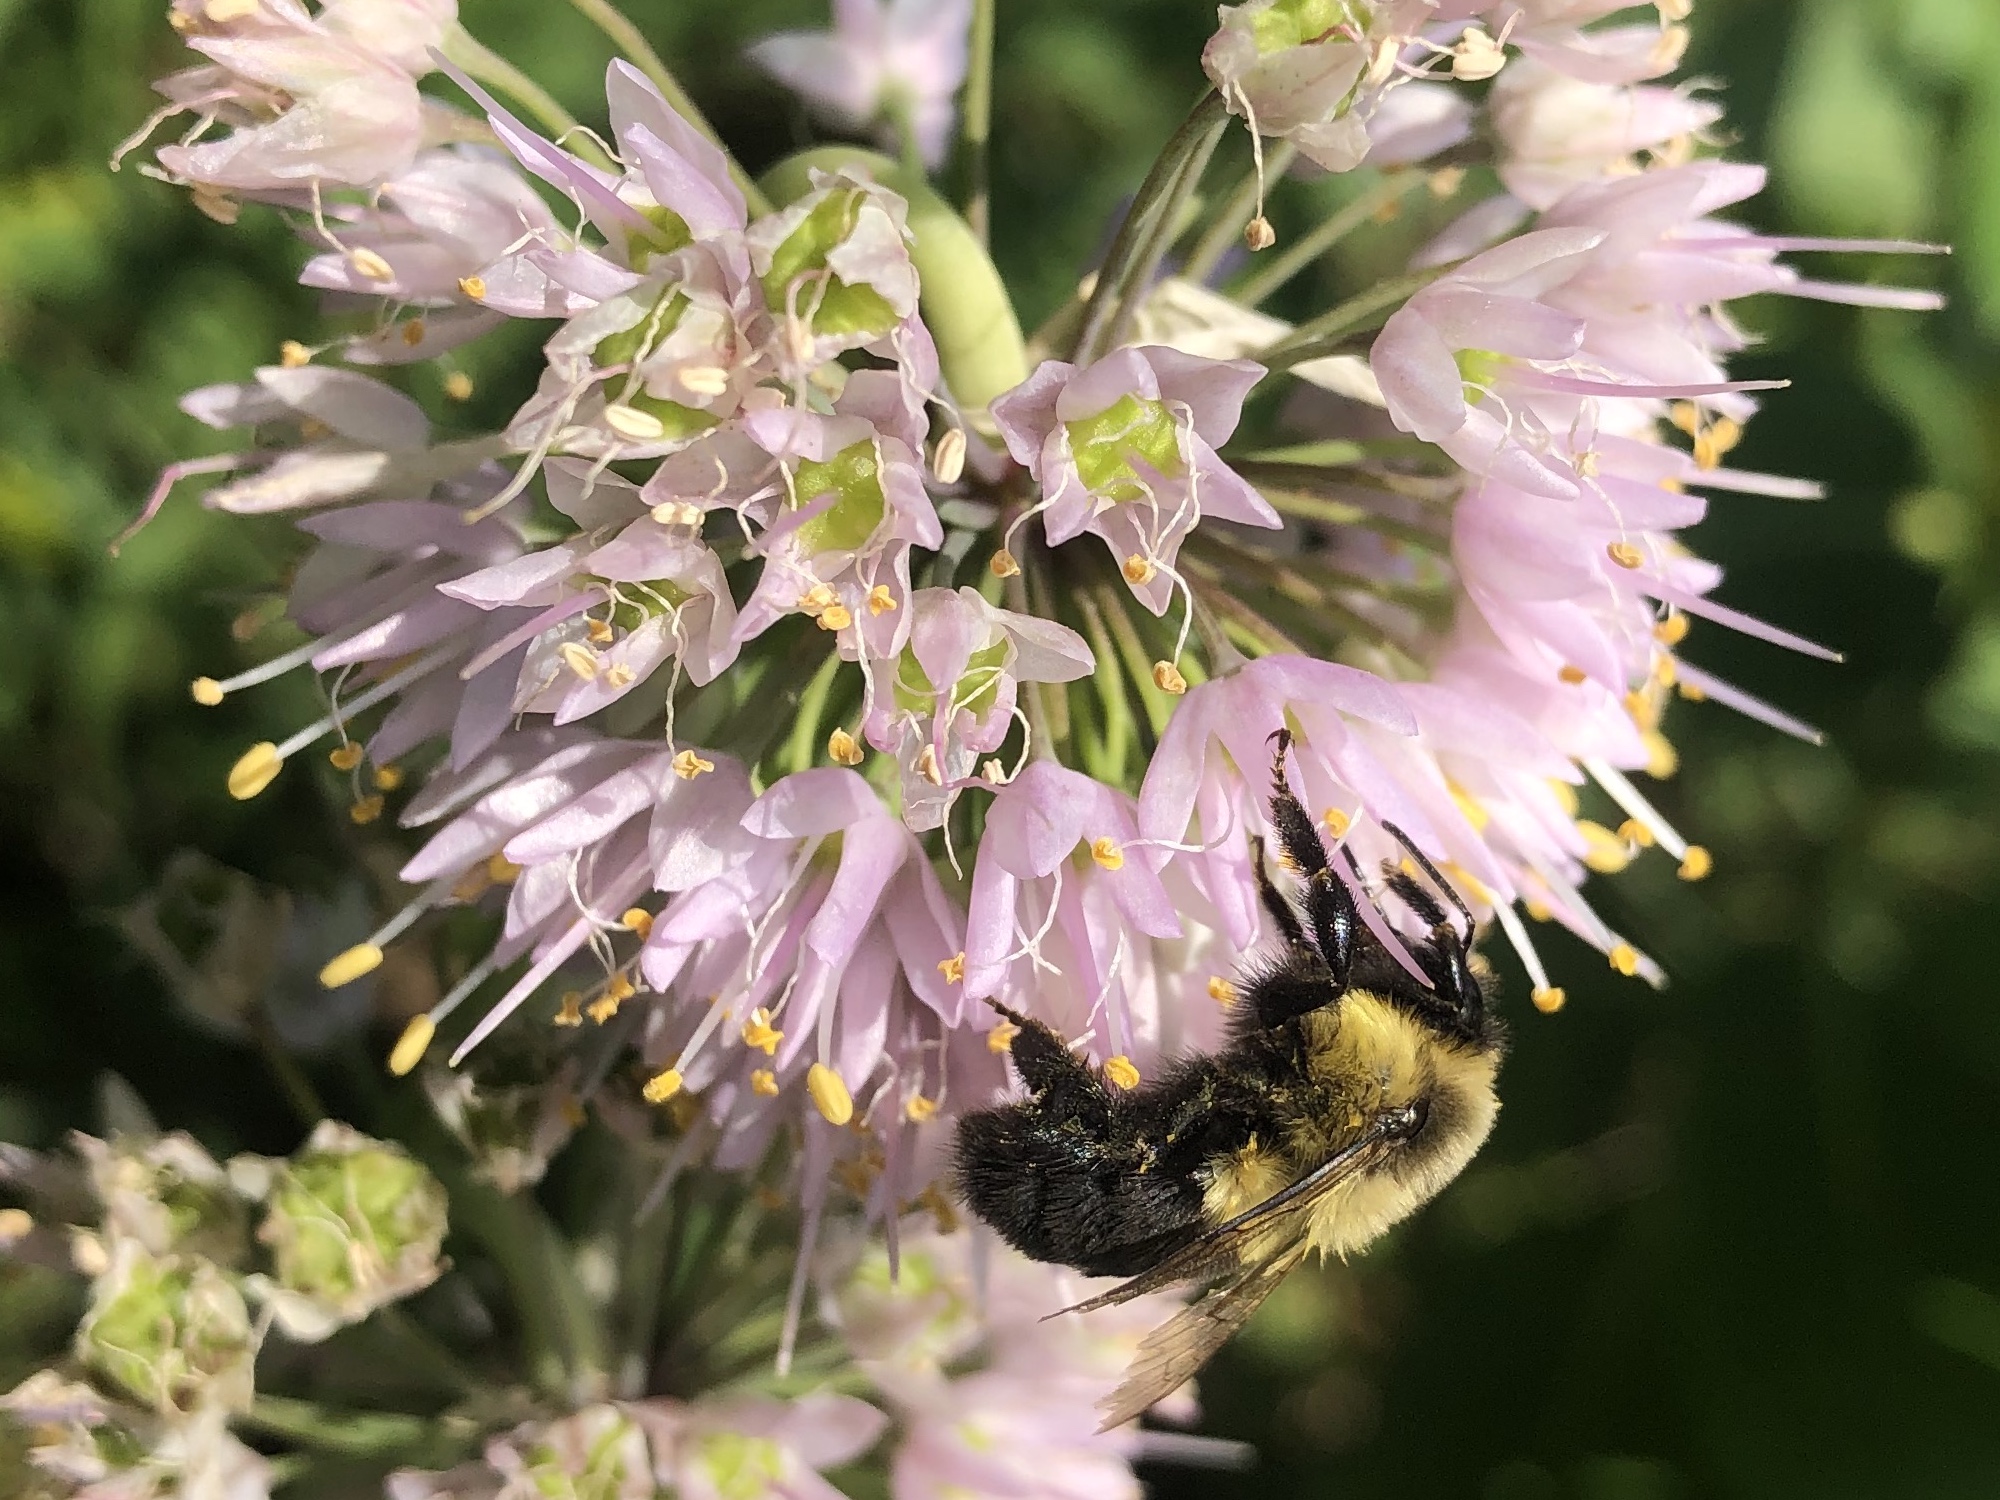 Bumblebee on Nodding Wild Onion on August 2, 2021.